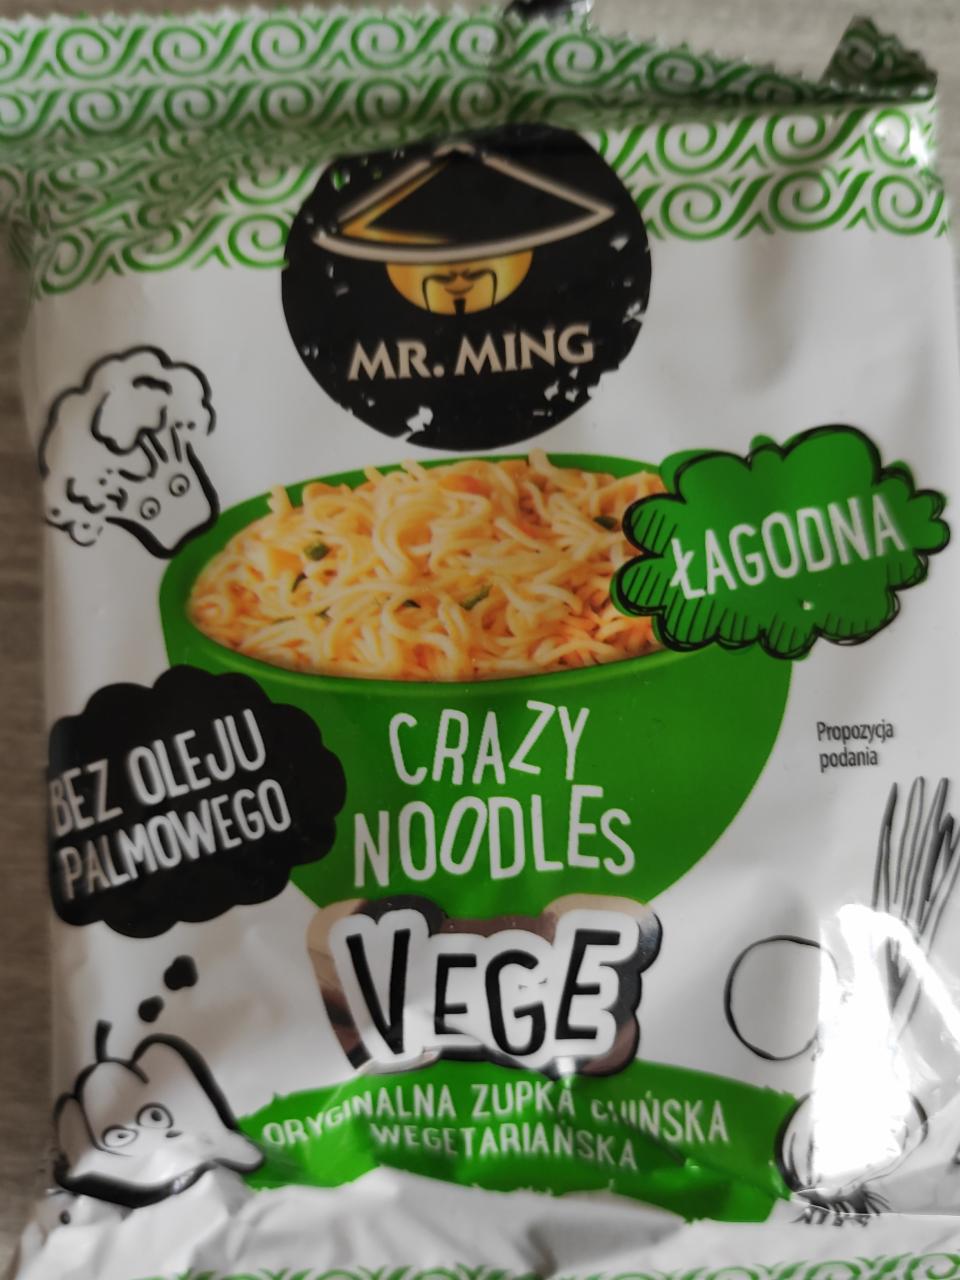 Zdjęcia - Vege Crazy noodles zupka chińska łagodna bez oleju palmowego Mr. Ming